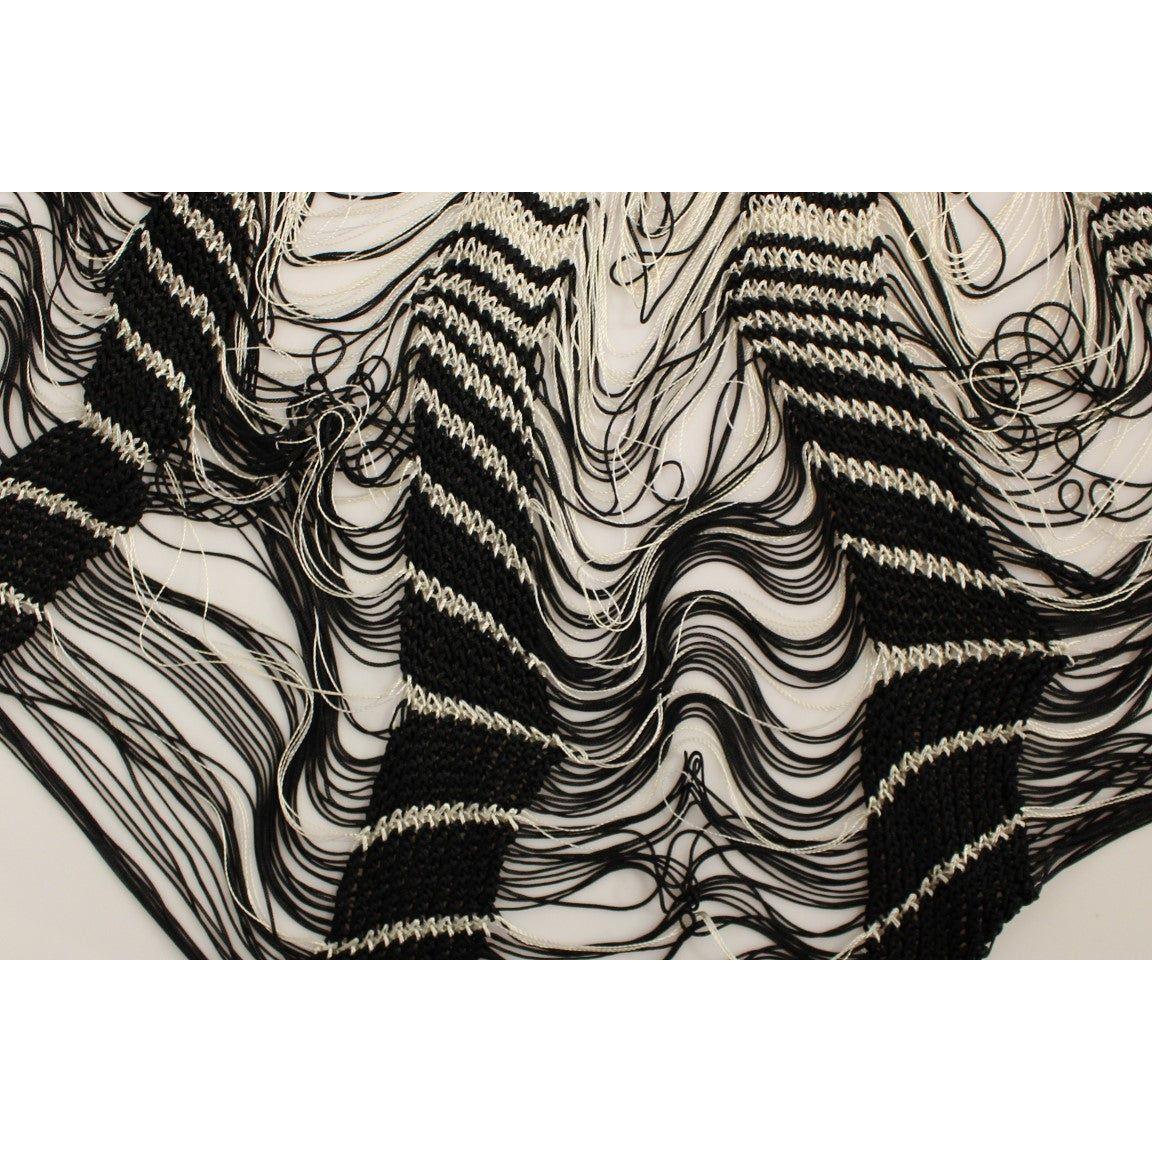 Alice Palmer Chic Black & White Knitted Skirt white-black-knitted-assymetrical-skirt 219090-white-black-knitted-assymetrical-skirt-5.jpg